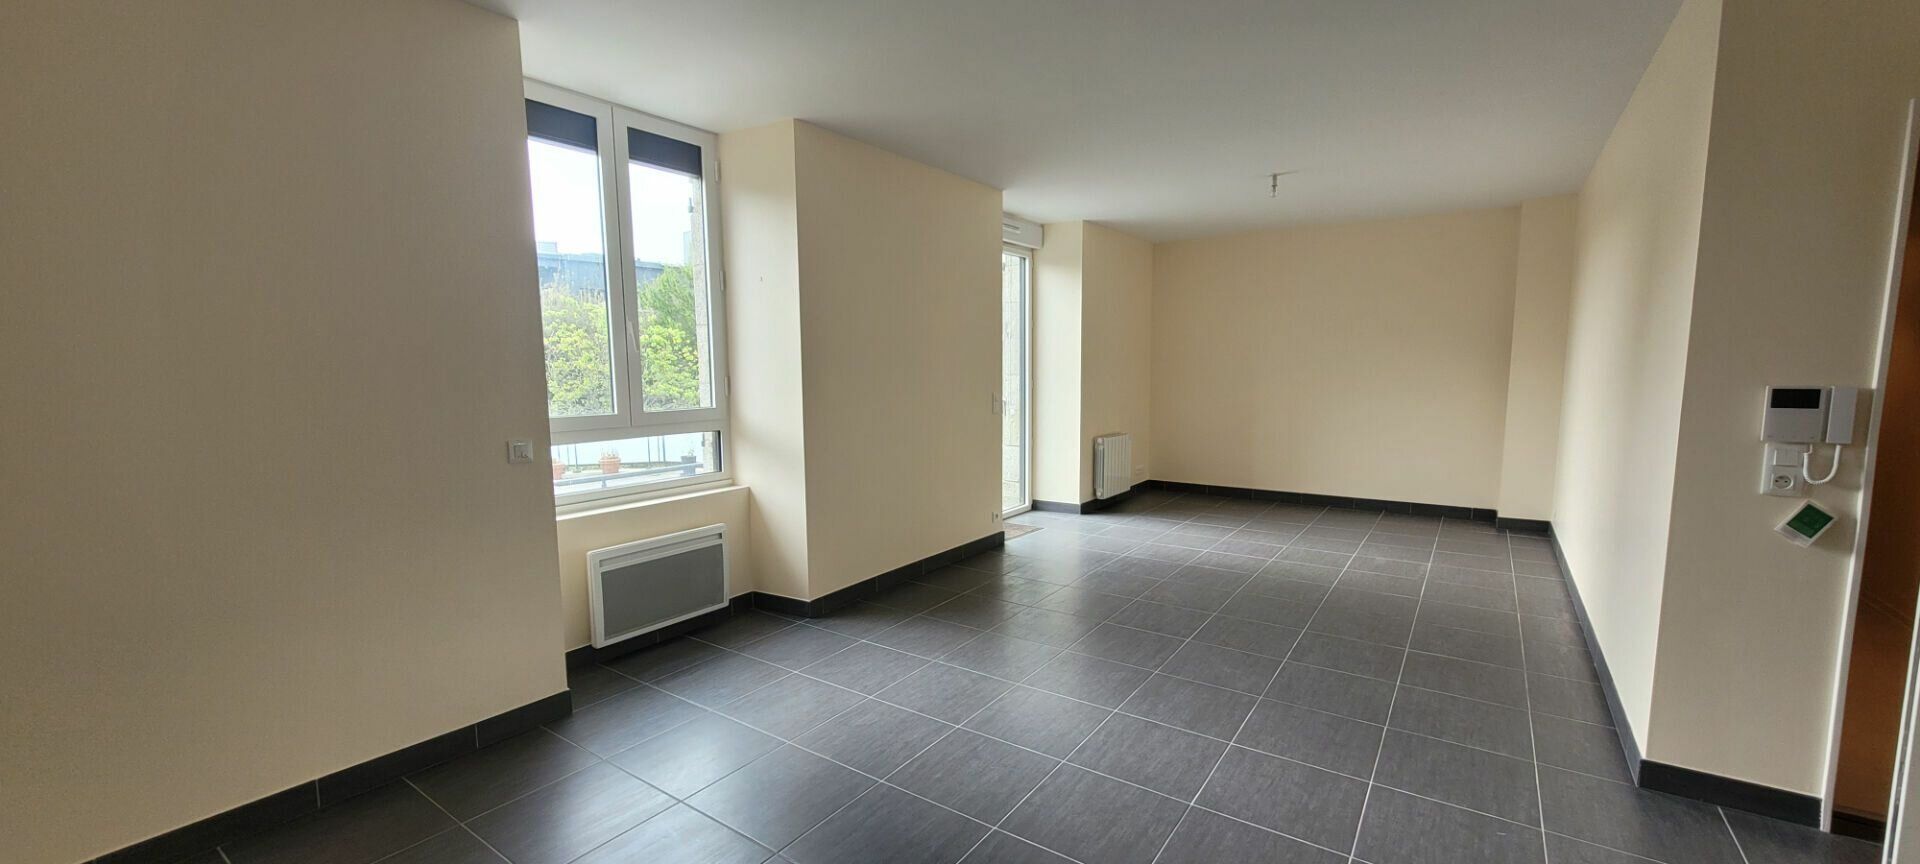 Appartement à vendre 3 109.55m2 à Saint-Brieuc vignette-2